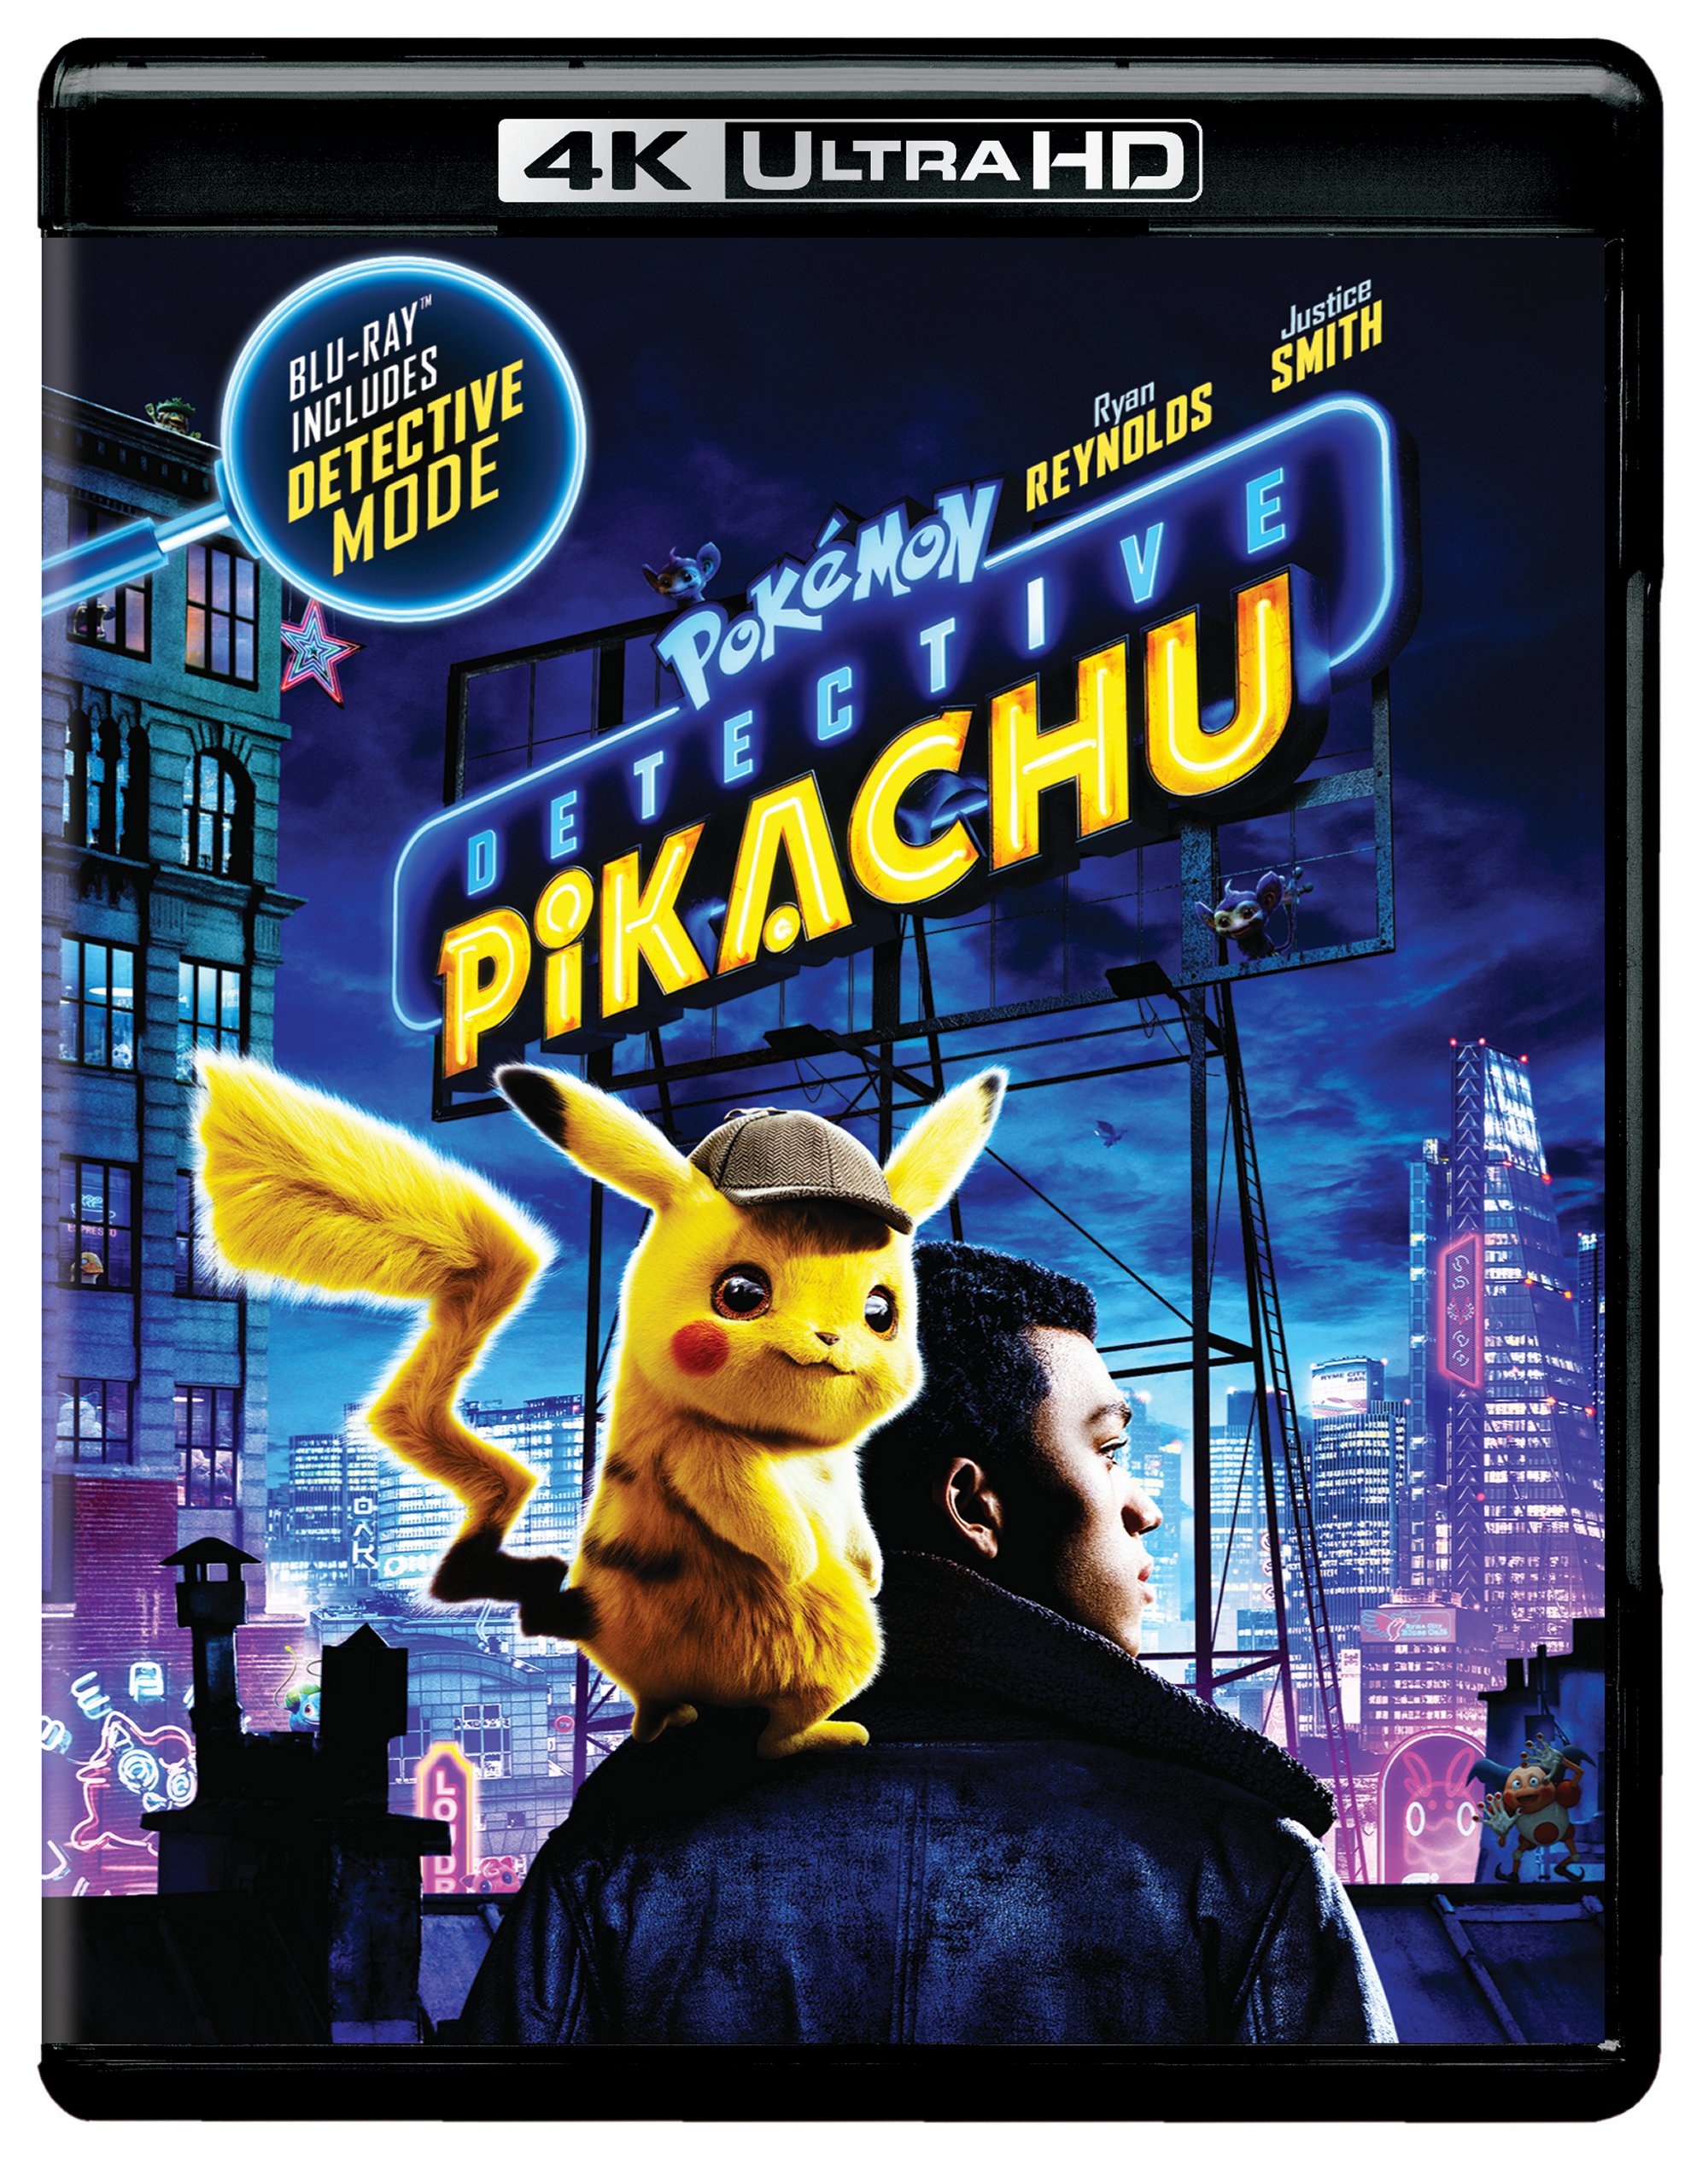 Pokémon Detective Pikachu (4K Ultra HD + Blu-ray) - UHD [ 2019 ]  - Adventure Movies On 4K Ultra HD Blu-ray - Movies On GRUV